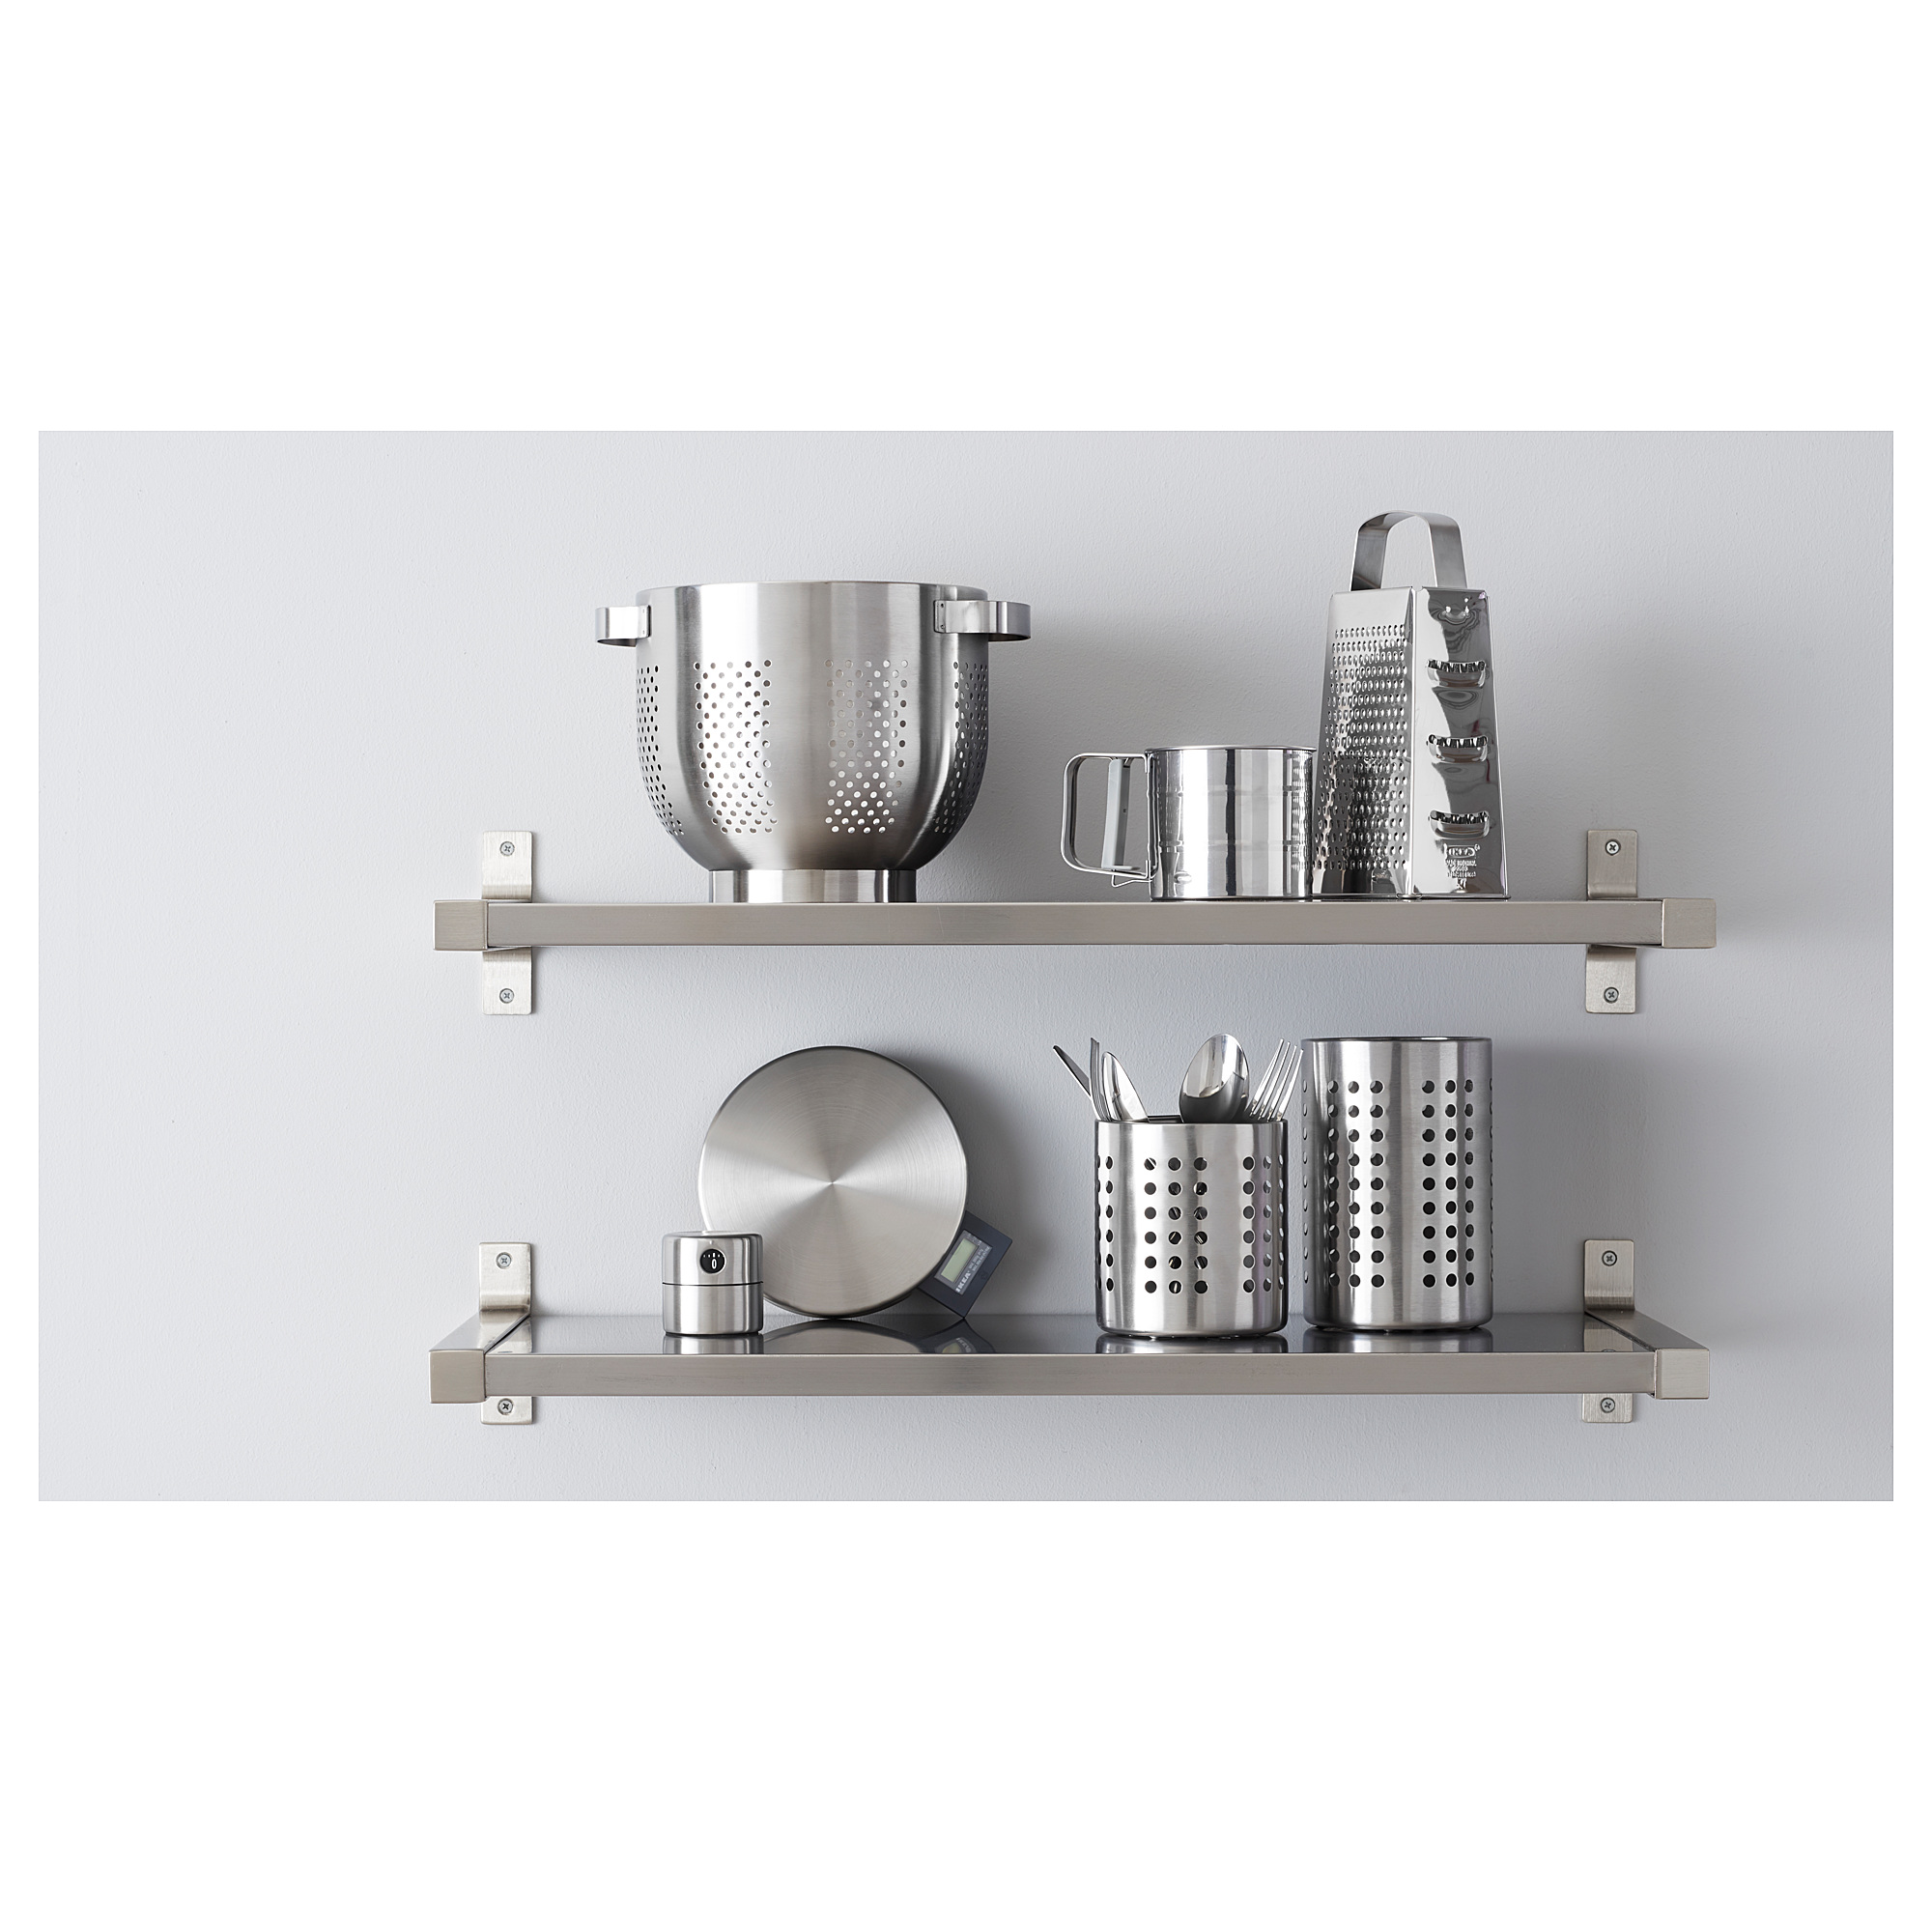 ORDNING kitchen utensil rack